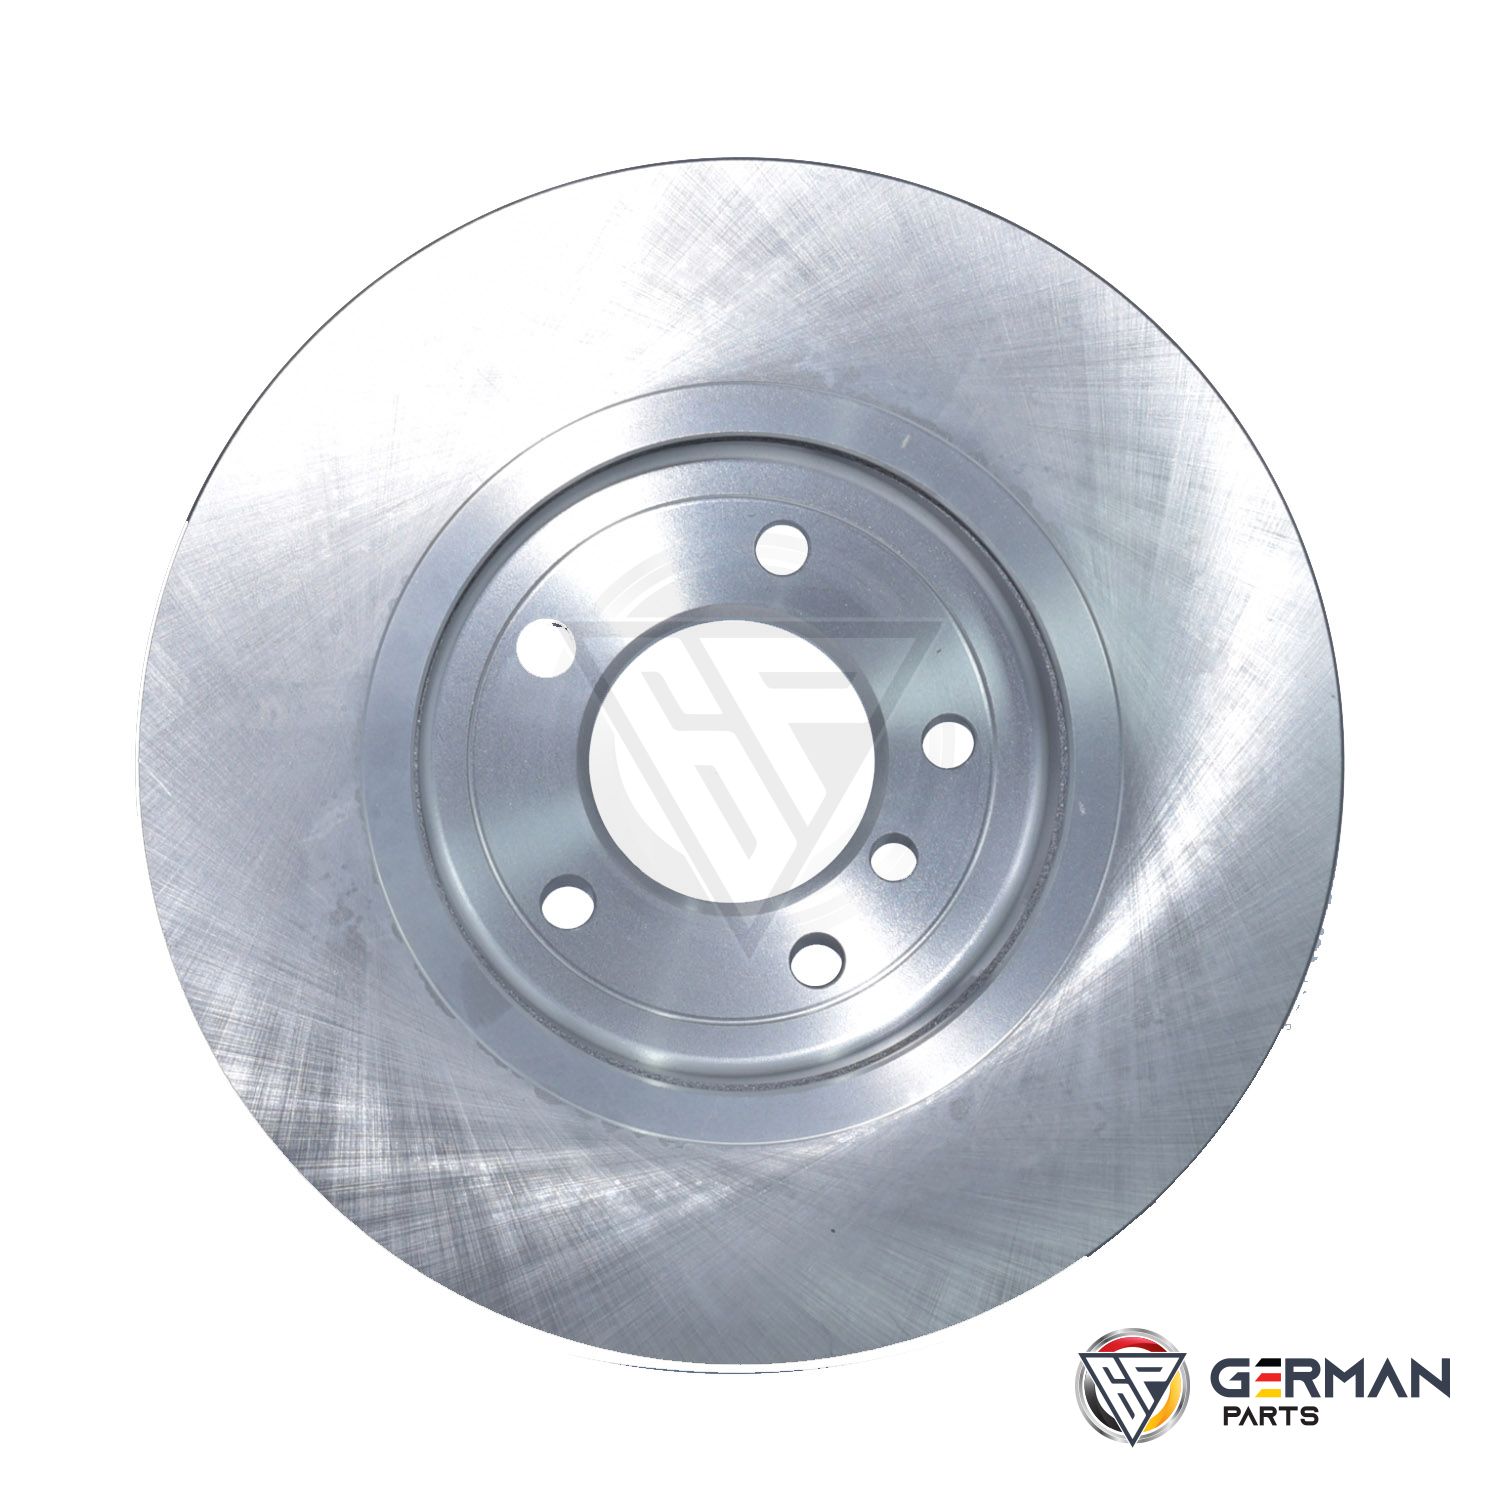 Buy TRW Front Brake Disc 34101166071 - German Parts